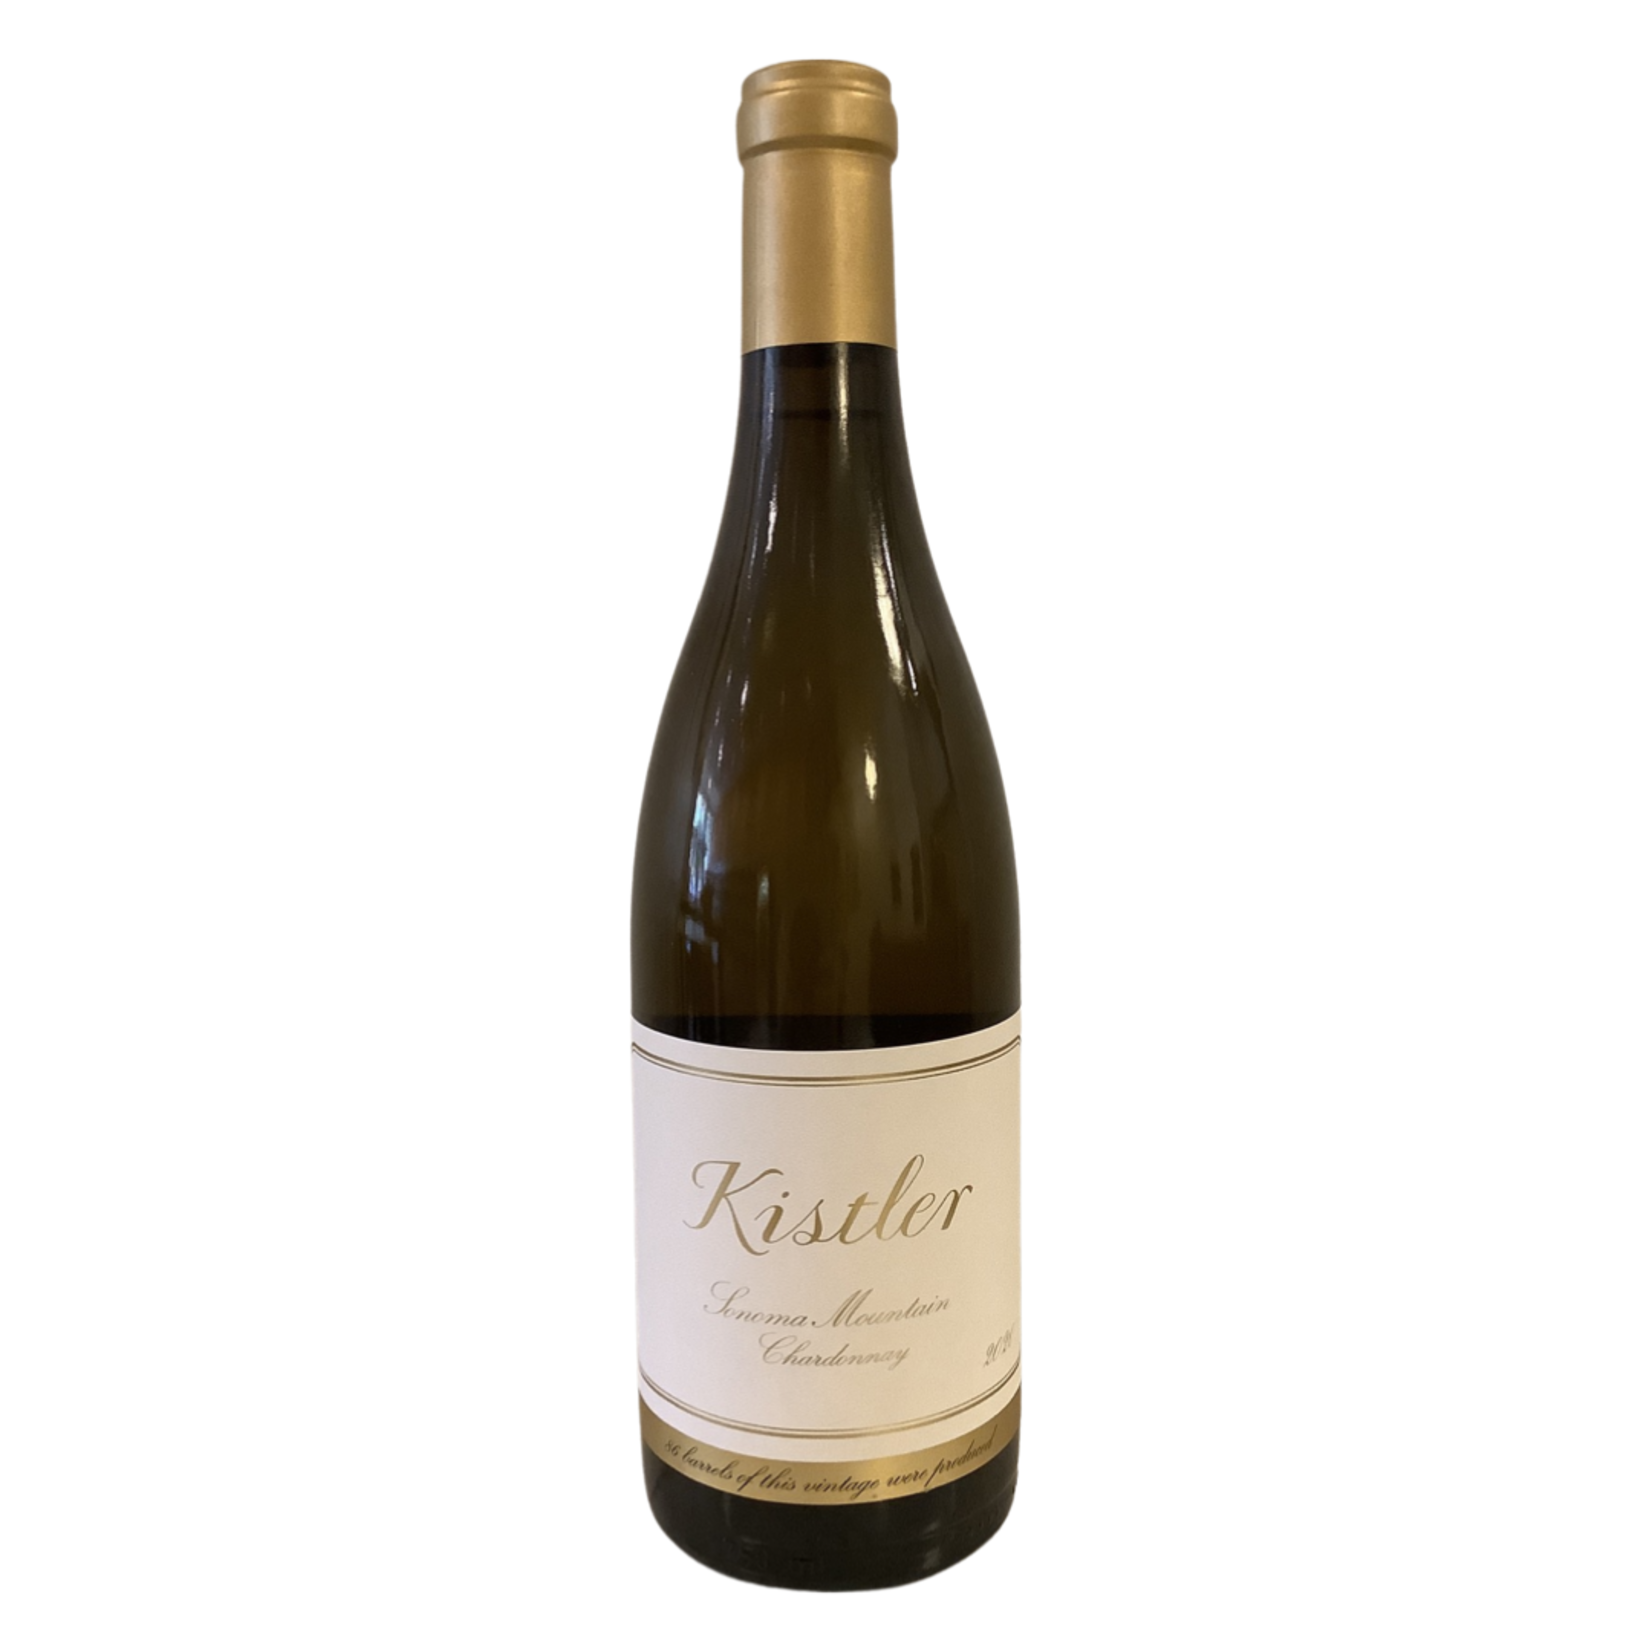 2020 Kistler Chardonnay, Sonoma Mountain CA